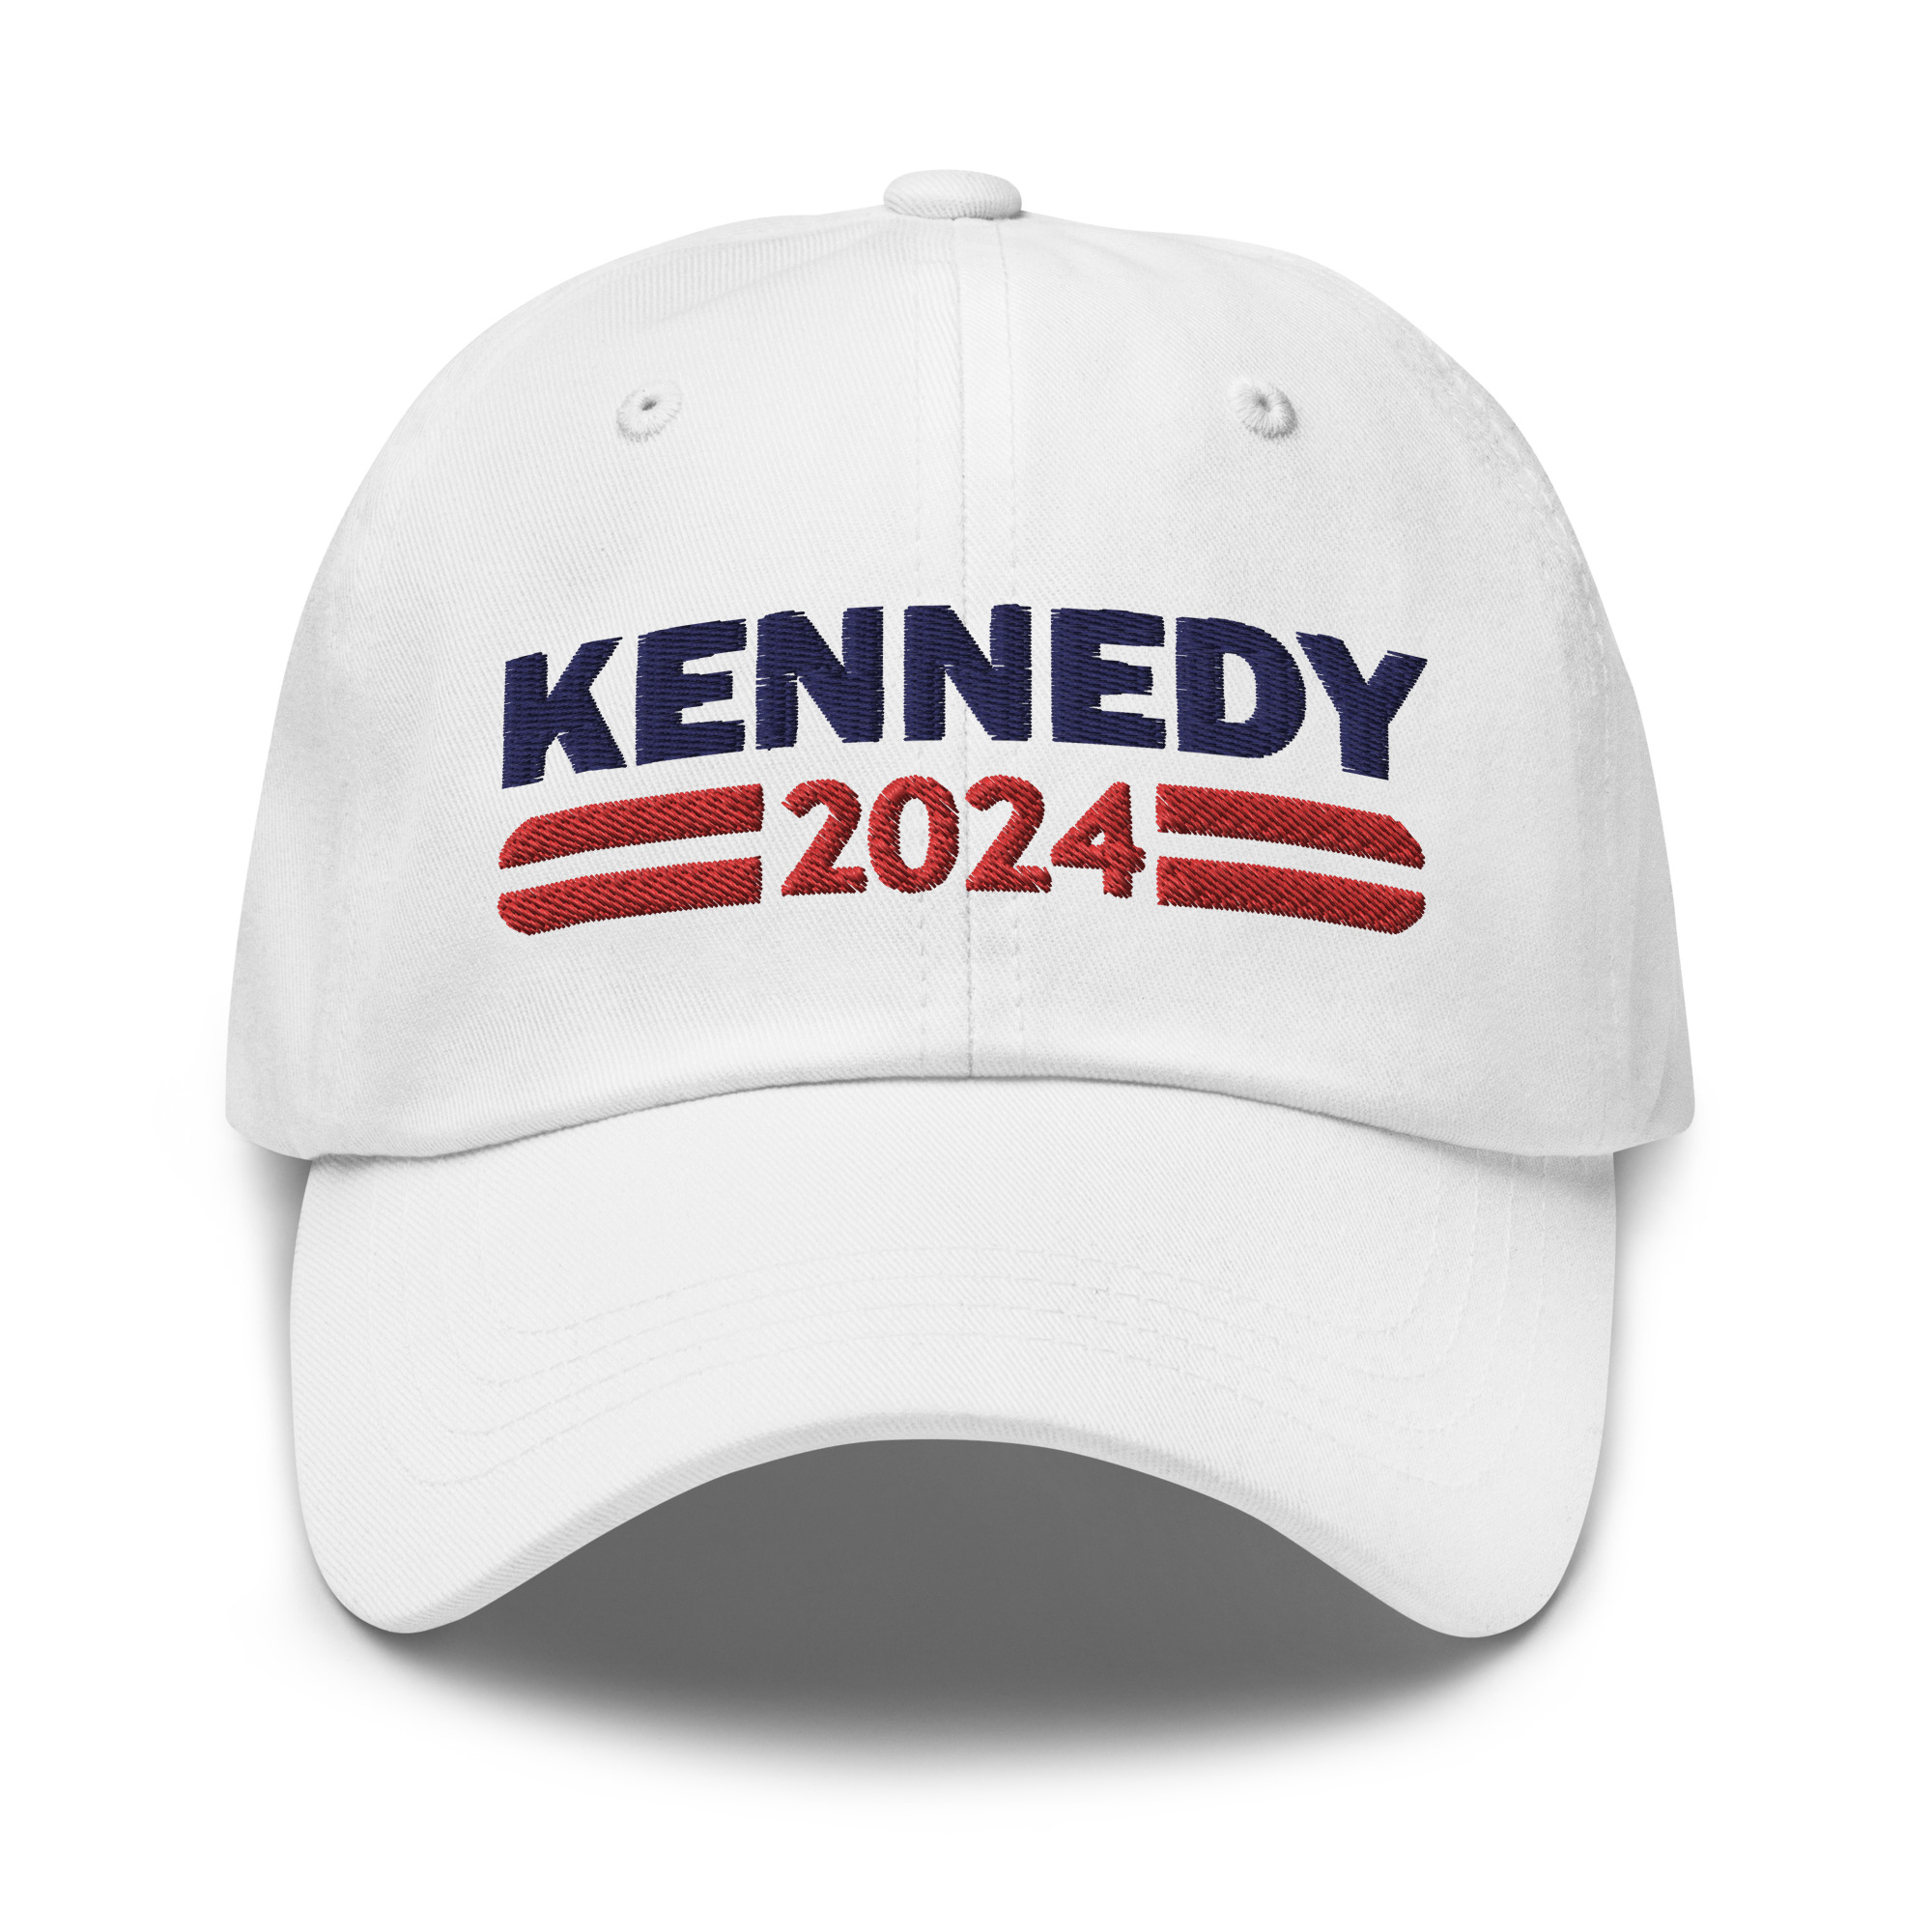 Kennedy 2024 Hat Rockatee